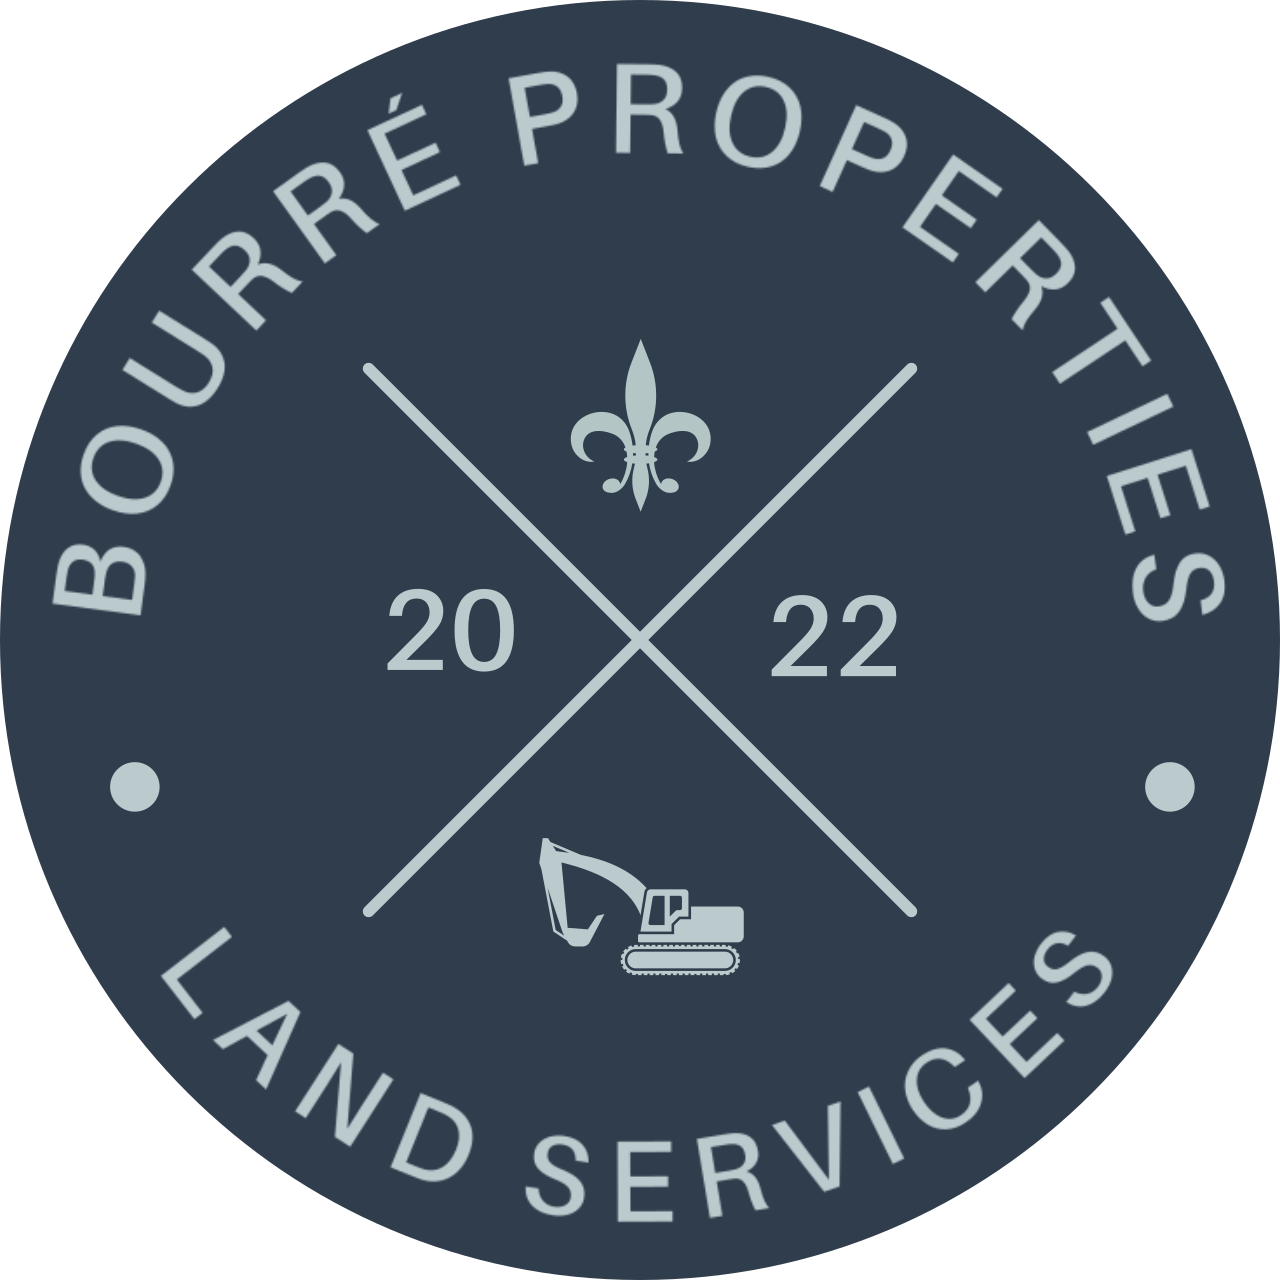 BOURRÉ PROPERTIES's logo